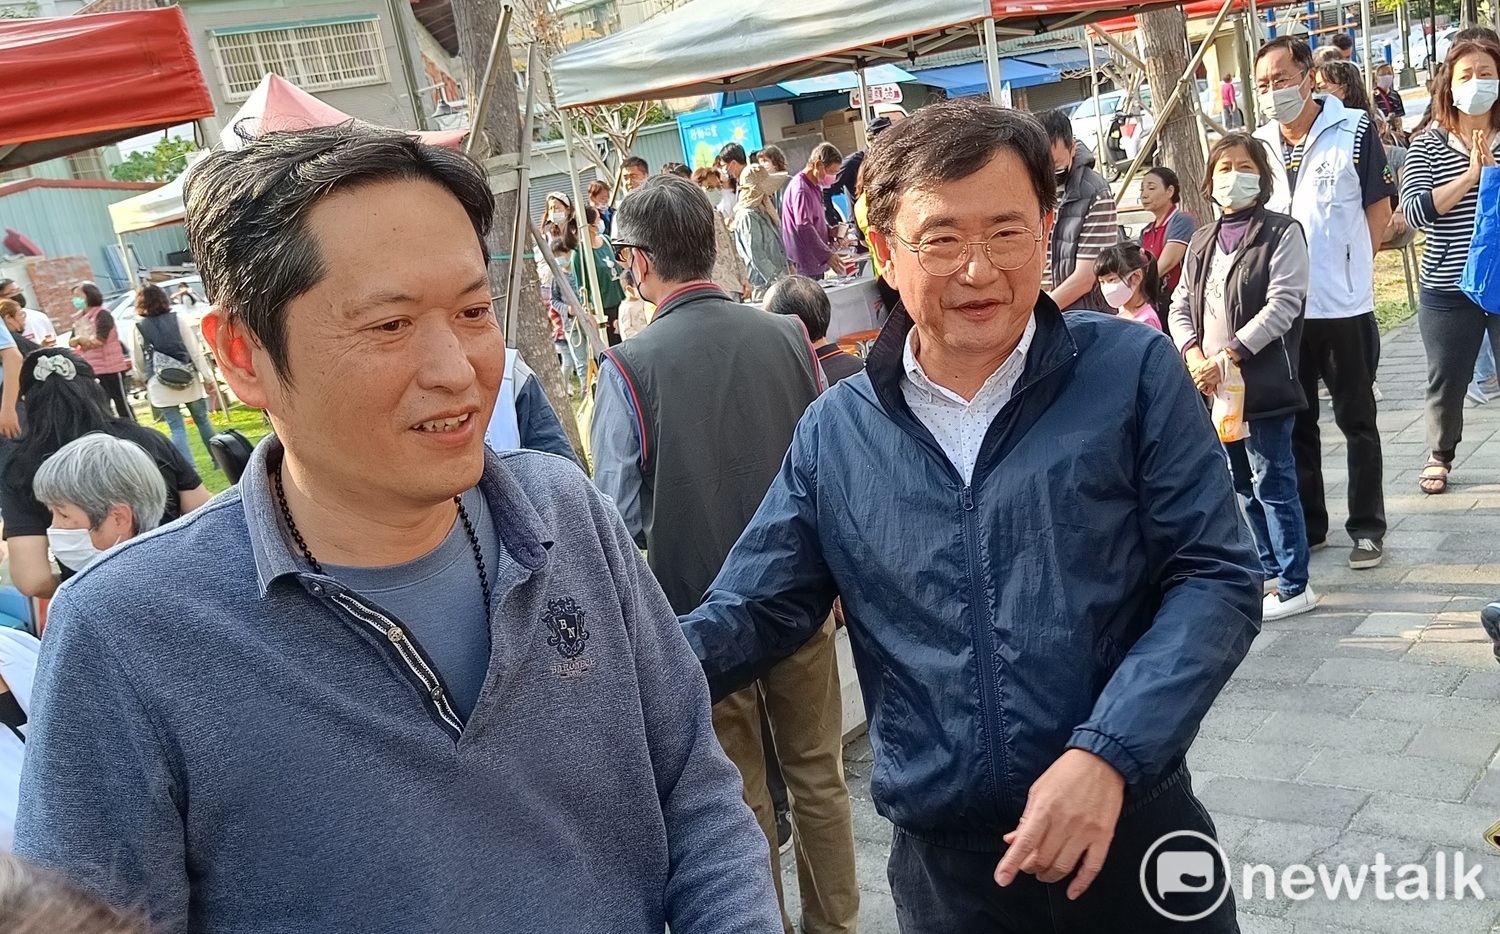 黃國書再次道歉 宣布不再參選連任 | 政治 | Newtalk新聞